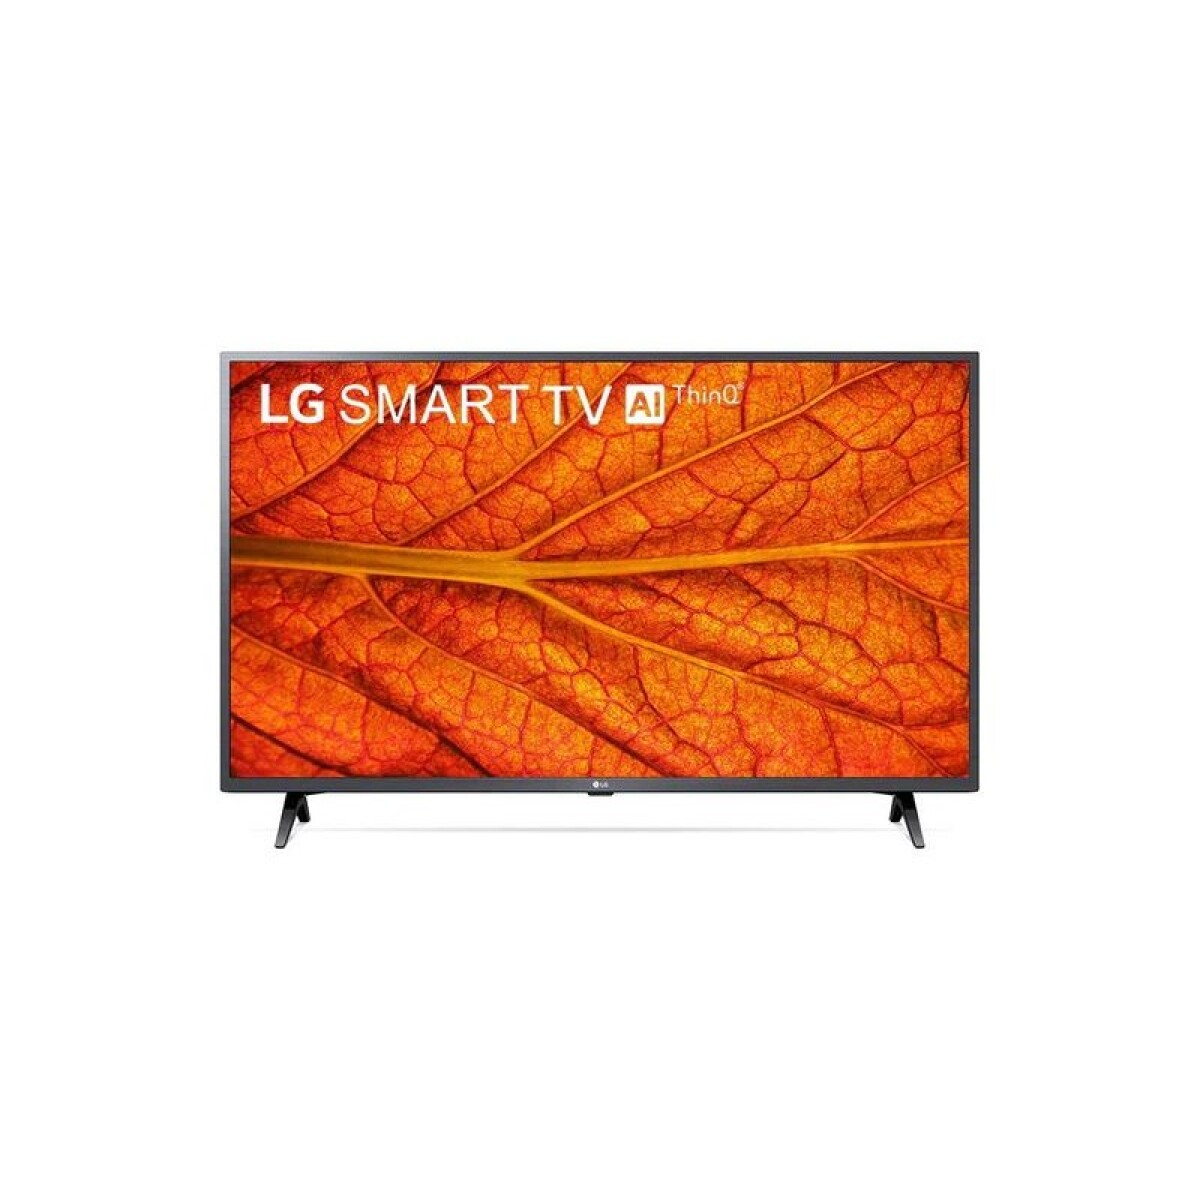 TV LG 32" LED SMART TV HD 